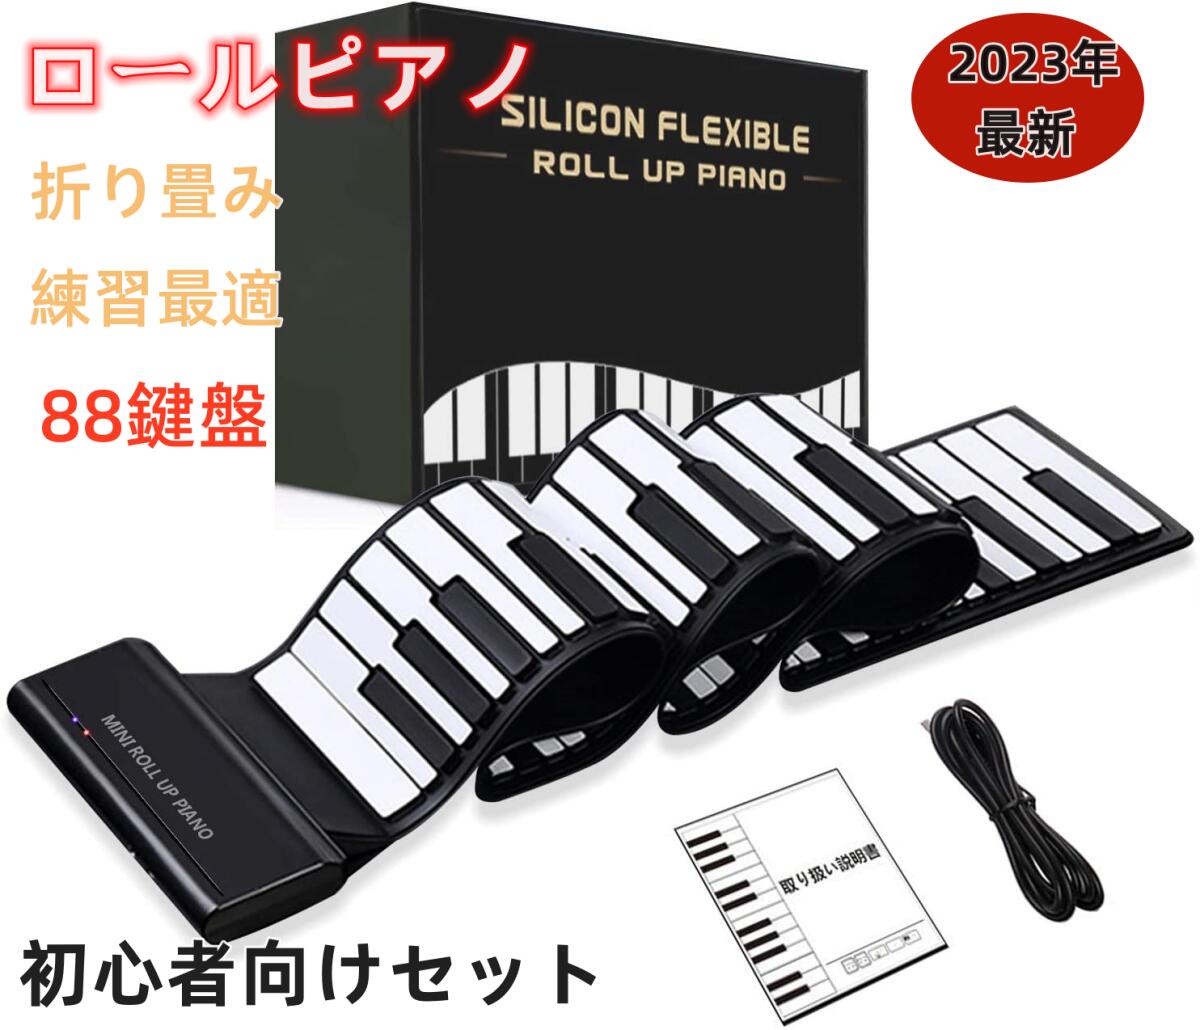 ロールピアノ 88鍵盤 電子ピアノ キーボード イヤホン スピーカー対応 折り畳み USB 持ち運び ロールアップピアノ 初心者向けセット 編曲 練習 演奏